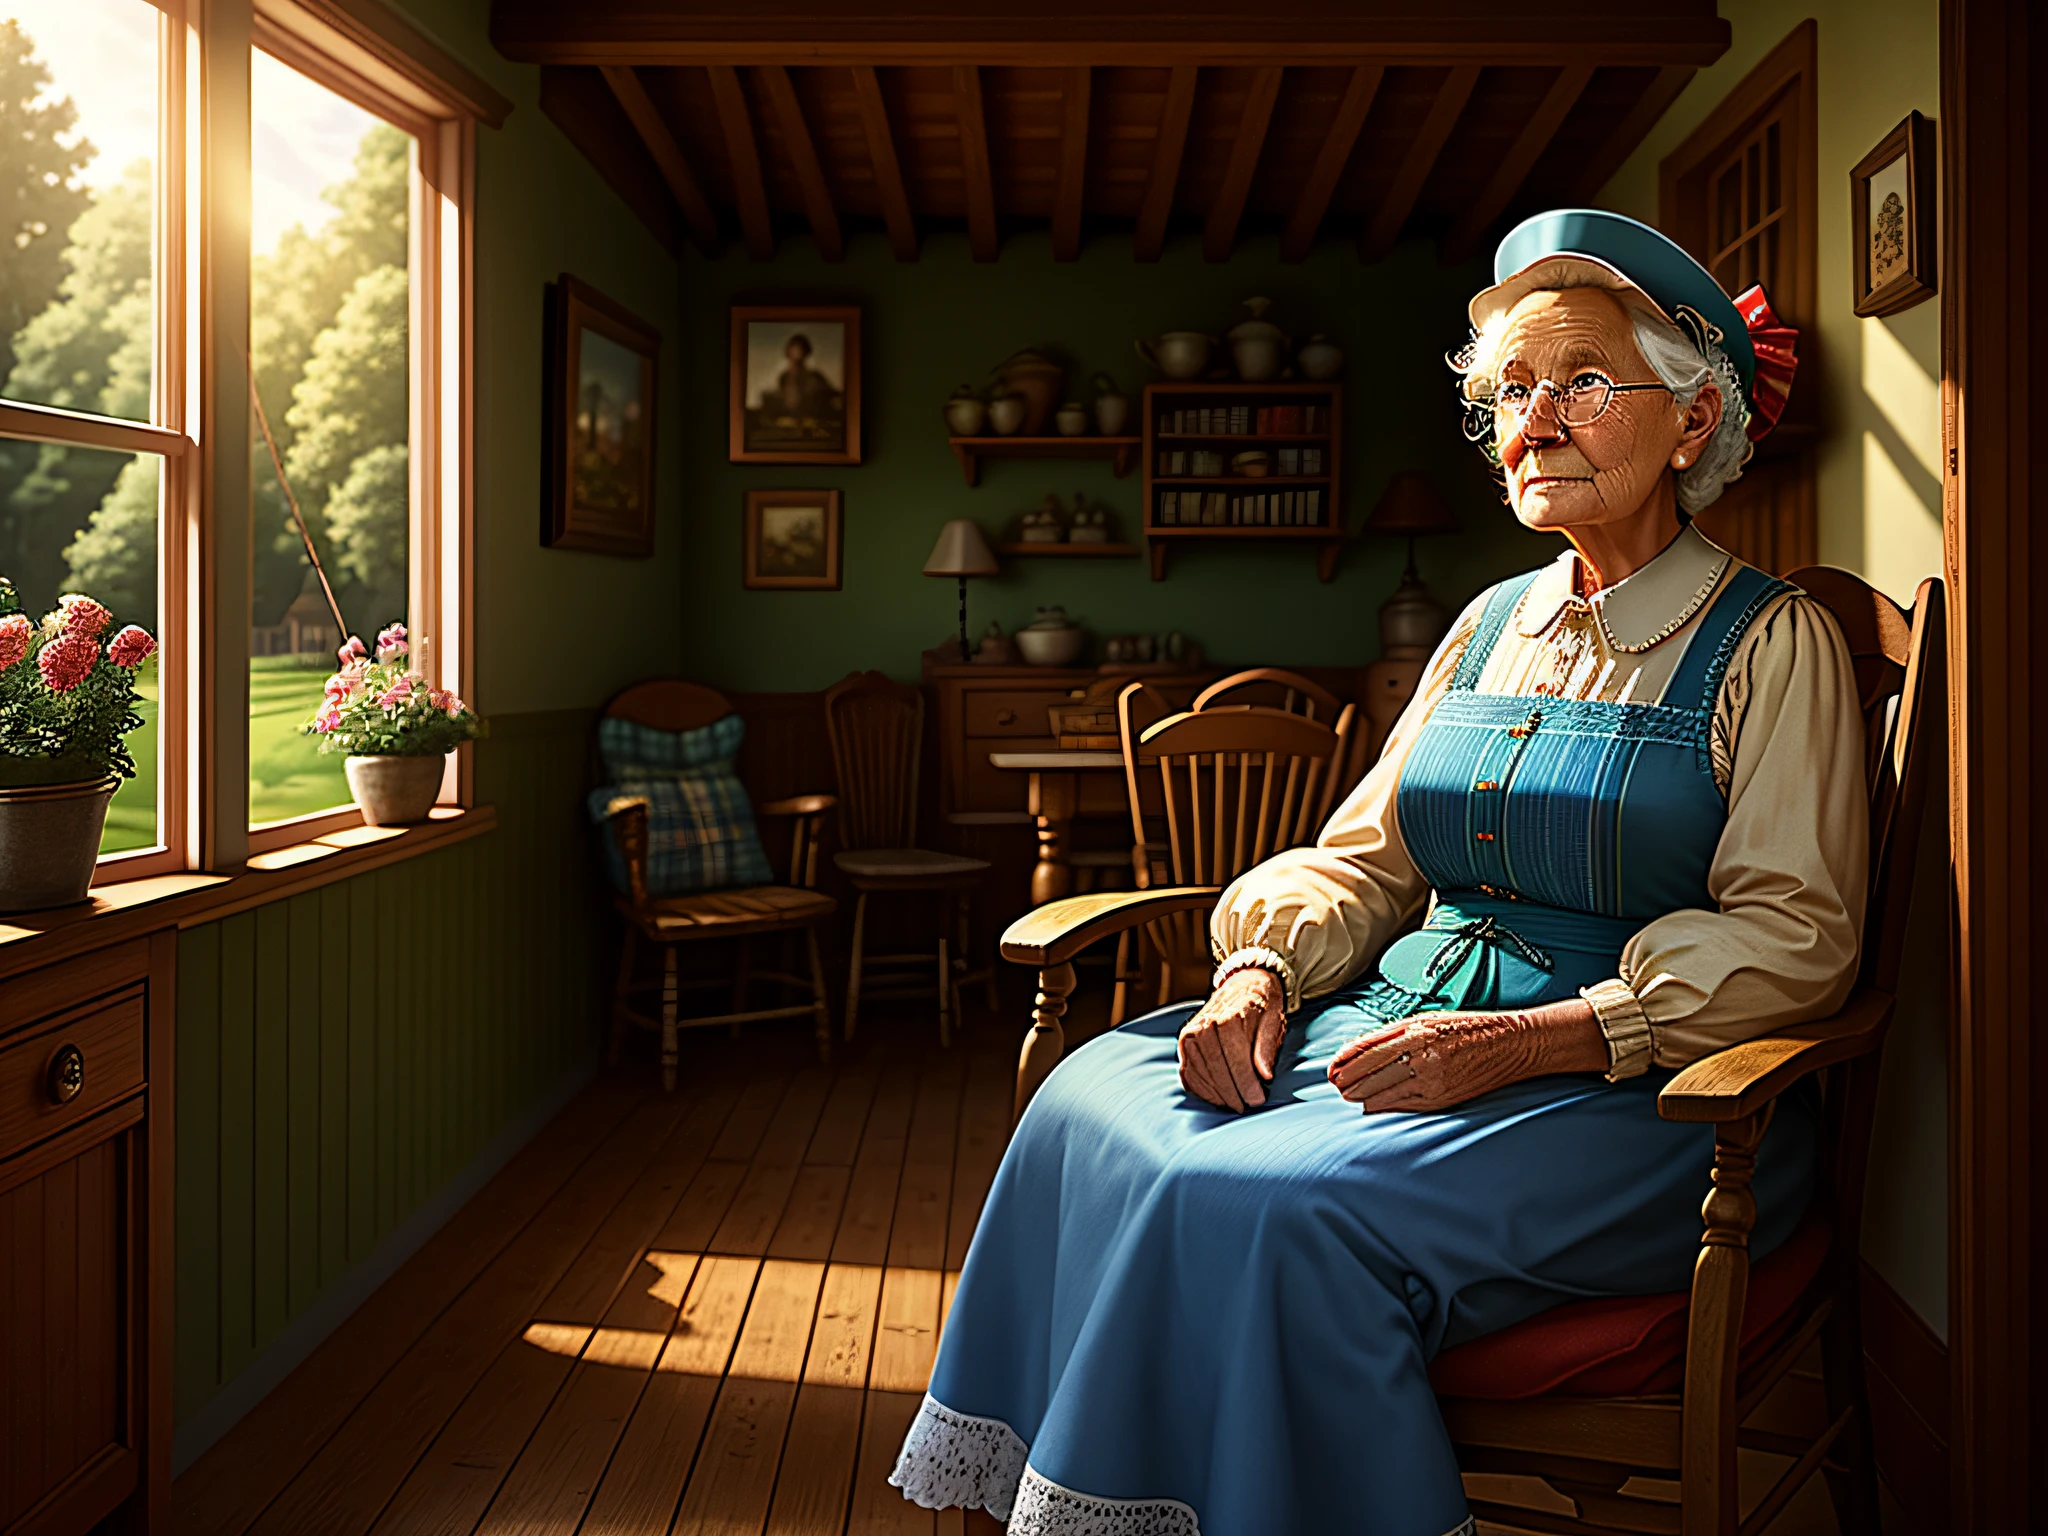 alta qualidade, cena nostálgica de casa de campo com interior detalhado. Avó sentada na varanda, expressões faciais afetuosas, pequena luz